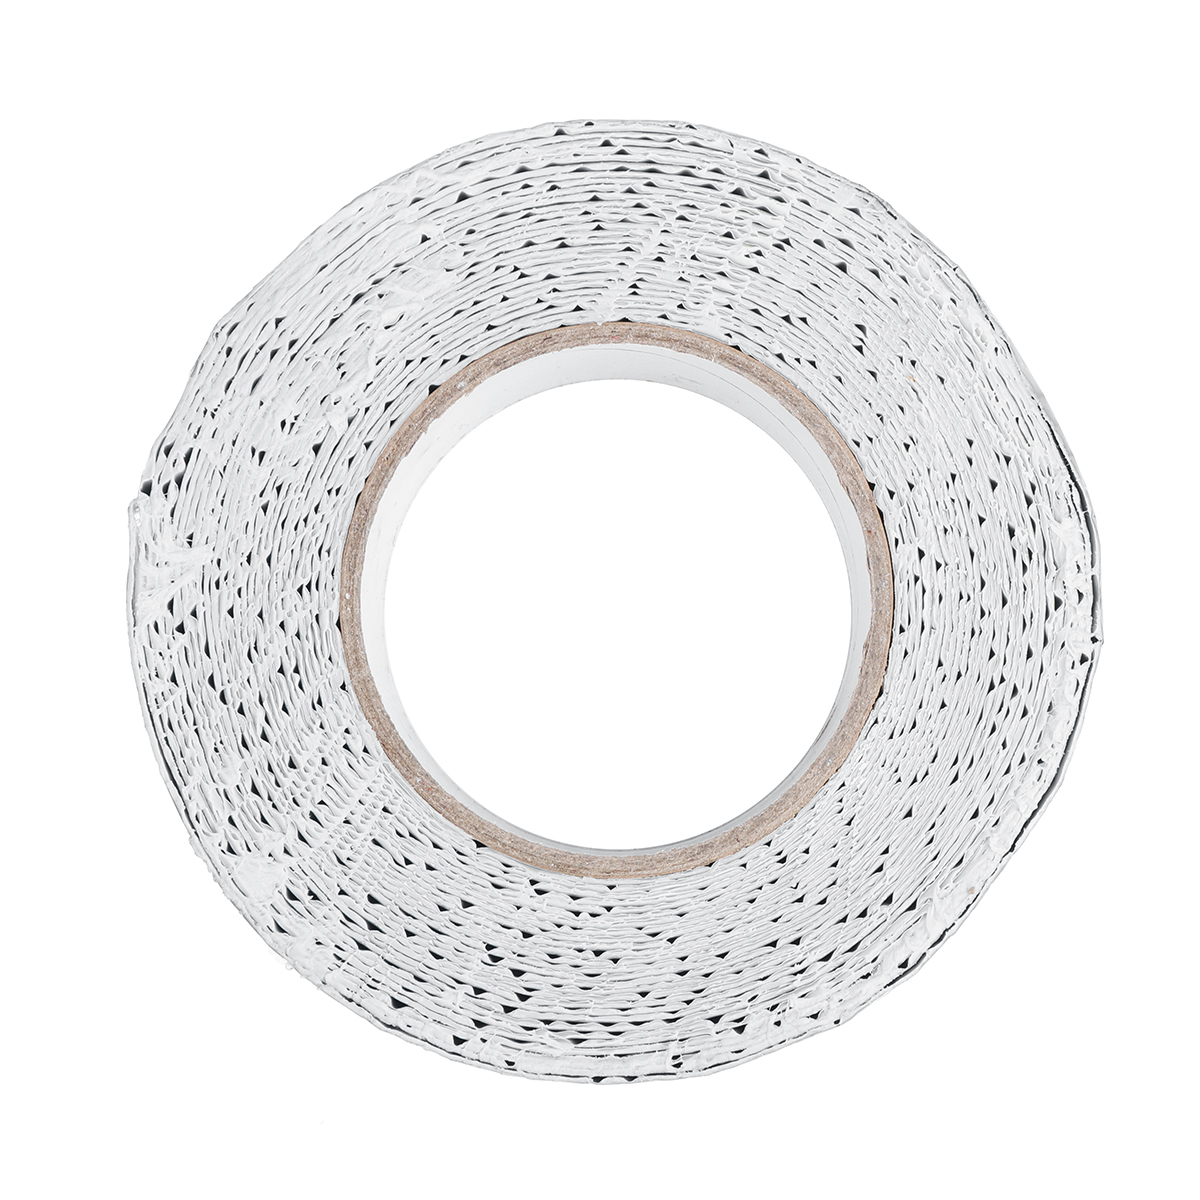 Aluminum-Foil-Butyl-Rubber-Tape-Self-Adhesive-Waterproof-Home-Roof-Pipe-Repair-Tape-1681292-7